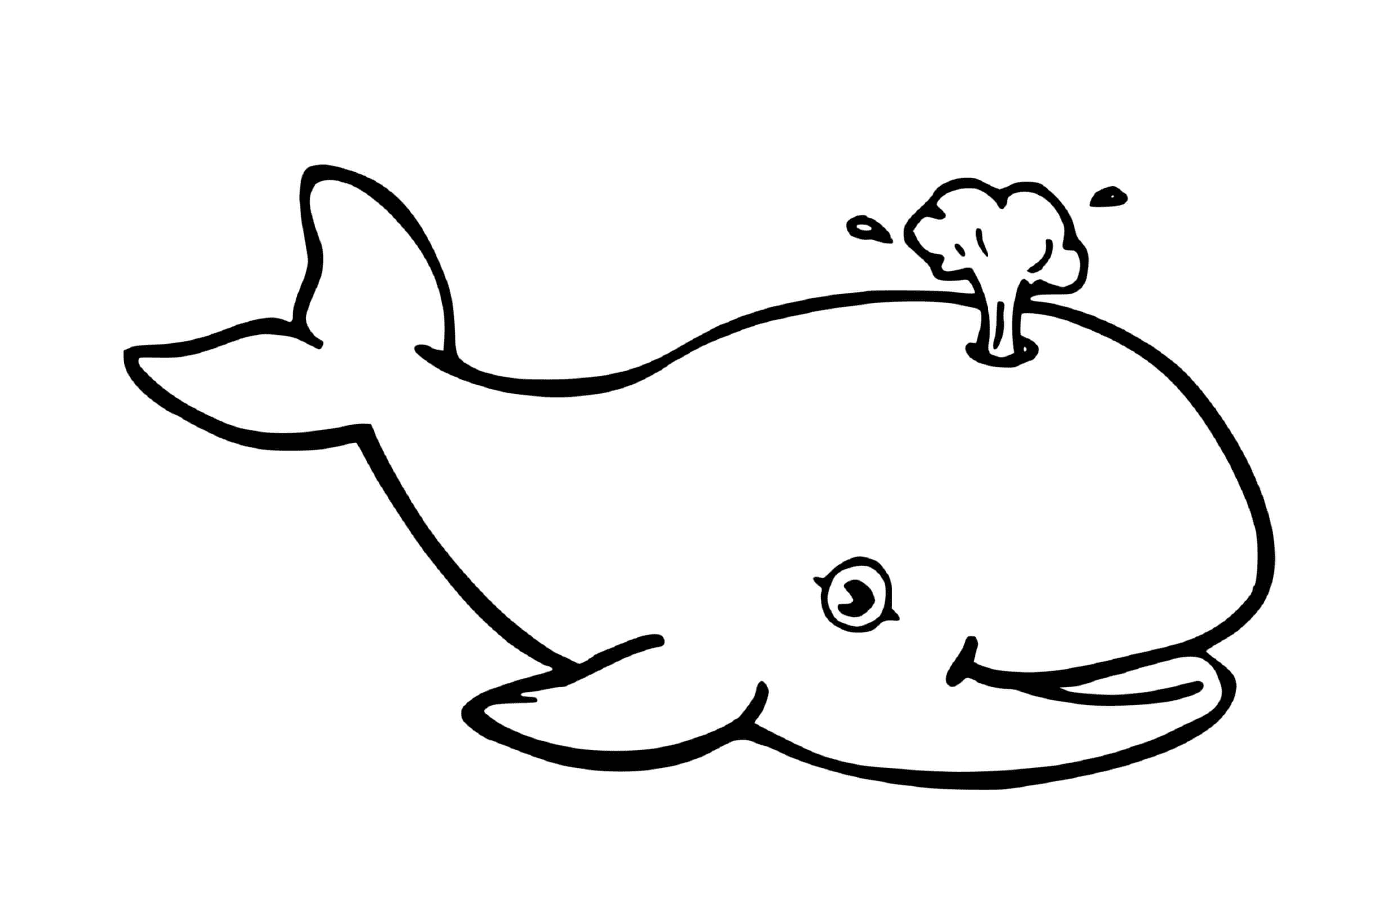  a whale and a mushroom 